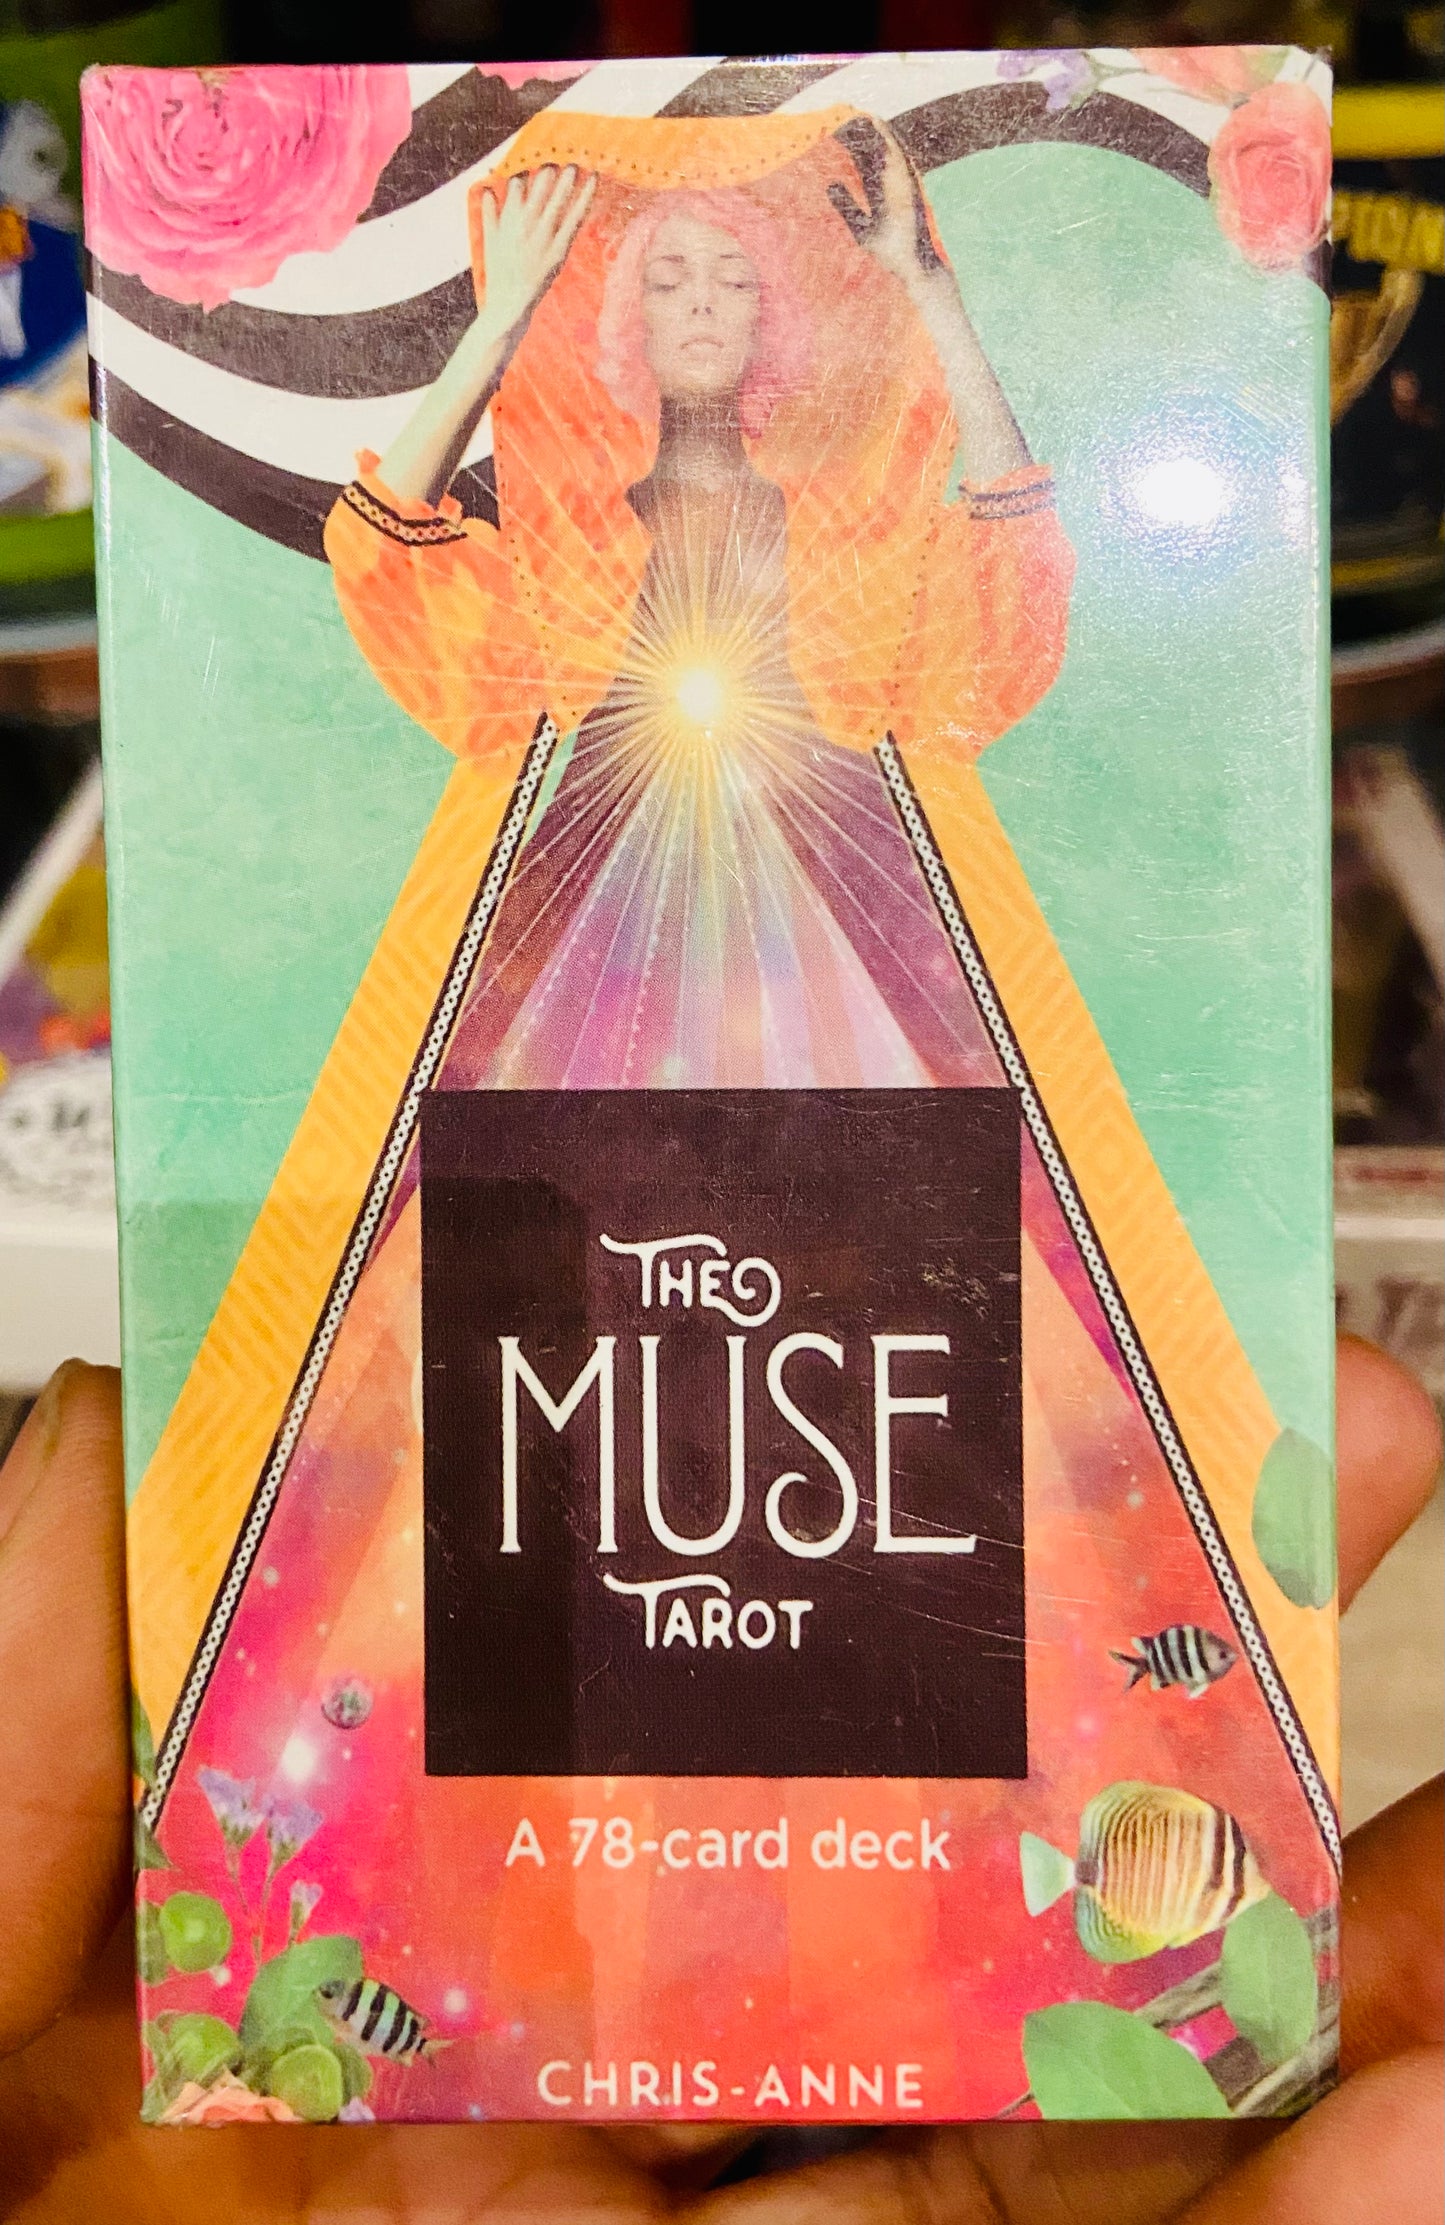 The muse tarot deck